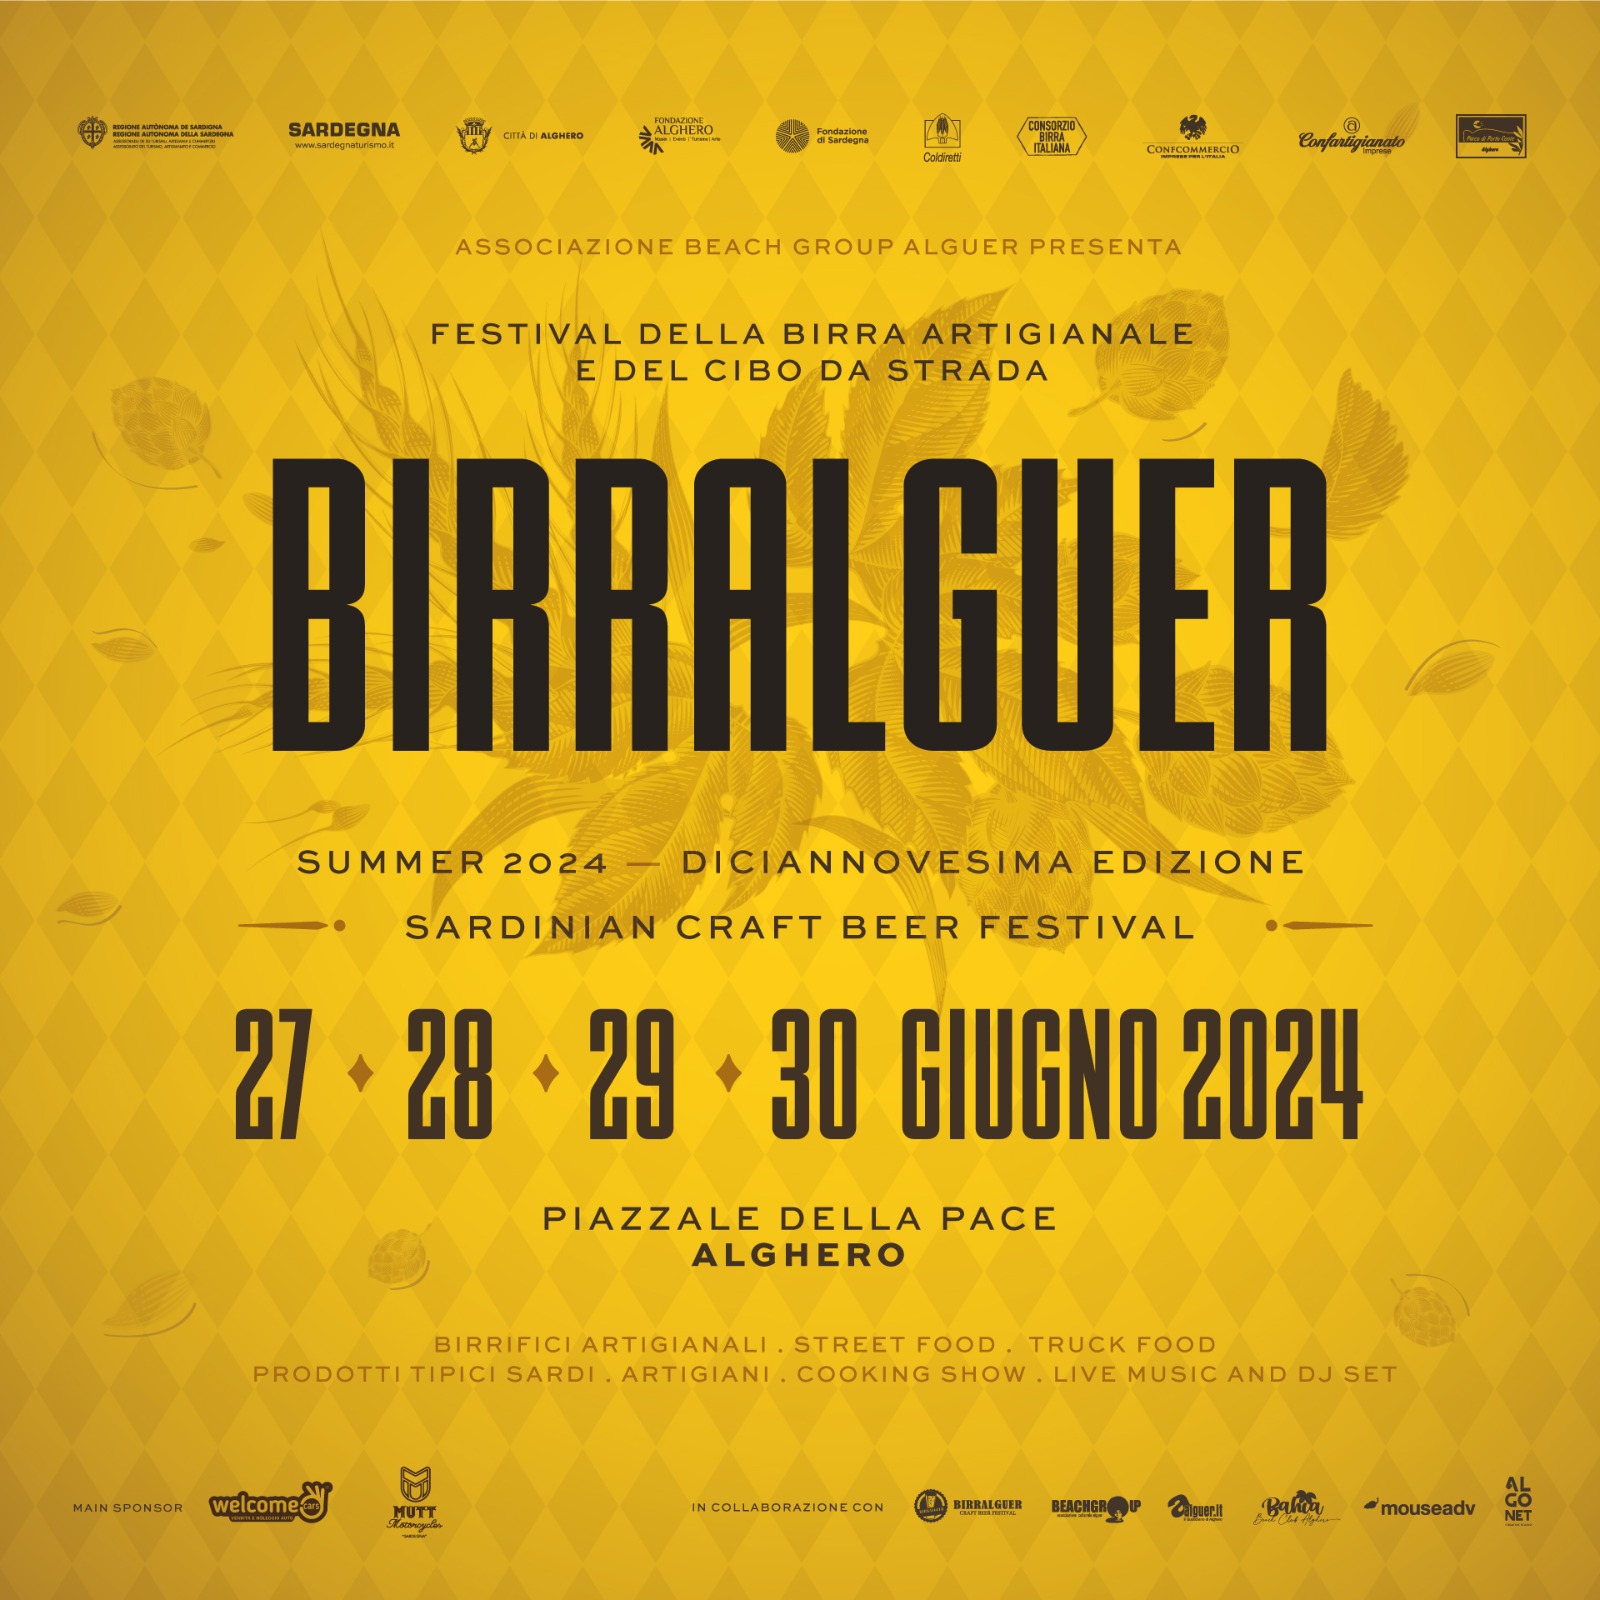 Il Festival della Birra Artigianale più longevo della Sardegna torna con la sua consueta edizione estiva imperdibile!